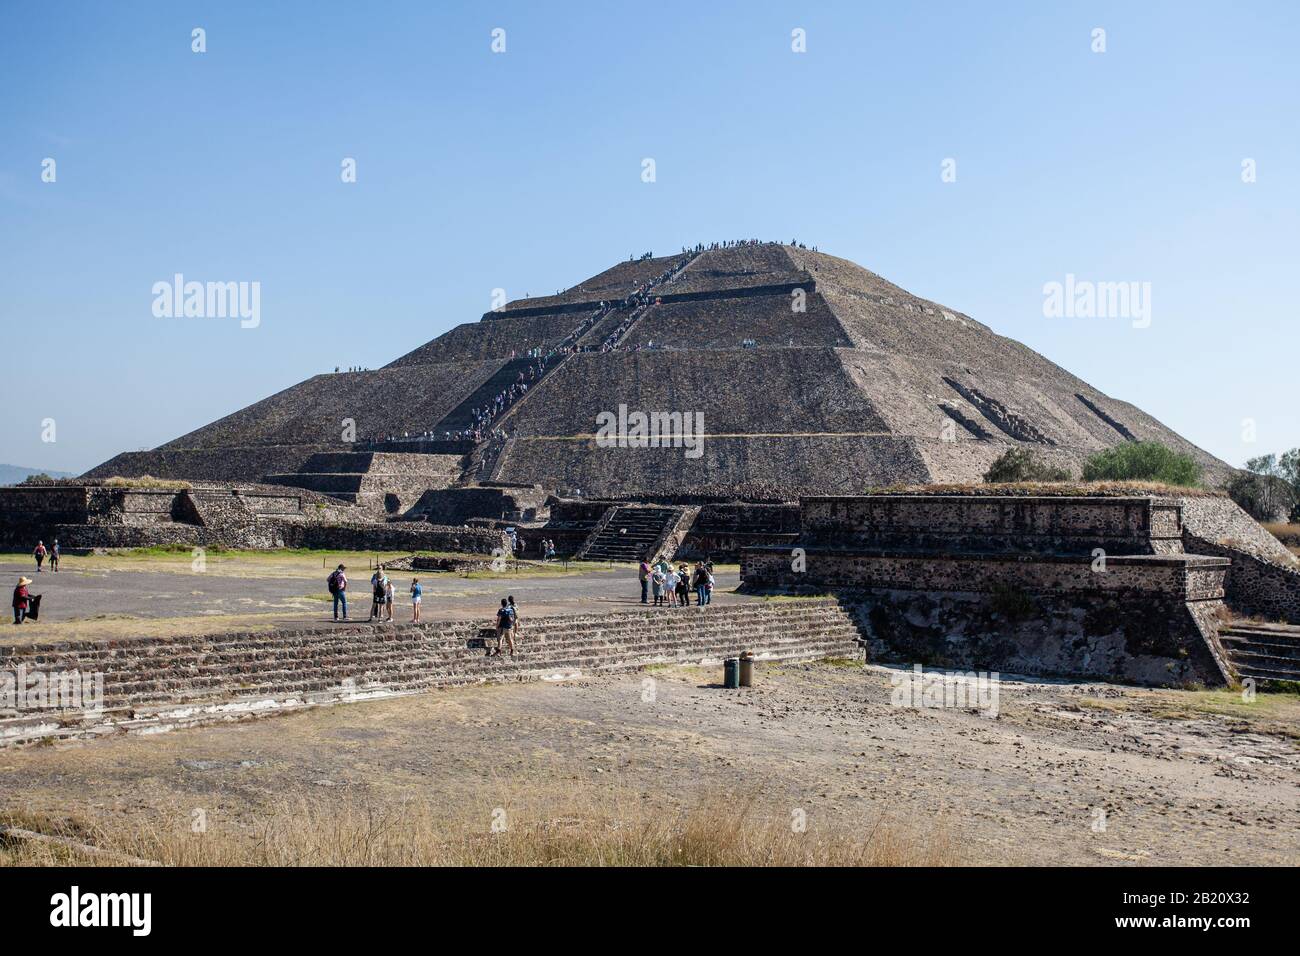 2019-11-25 Teotihuacan, Mexique. Vue sur la pyramide du soleil, de nombreux touristes grimpent au sommet de la pyramide. Banque D'Images